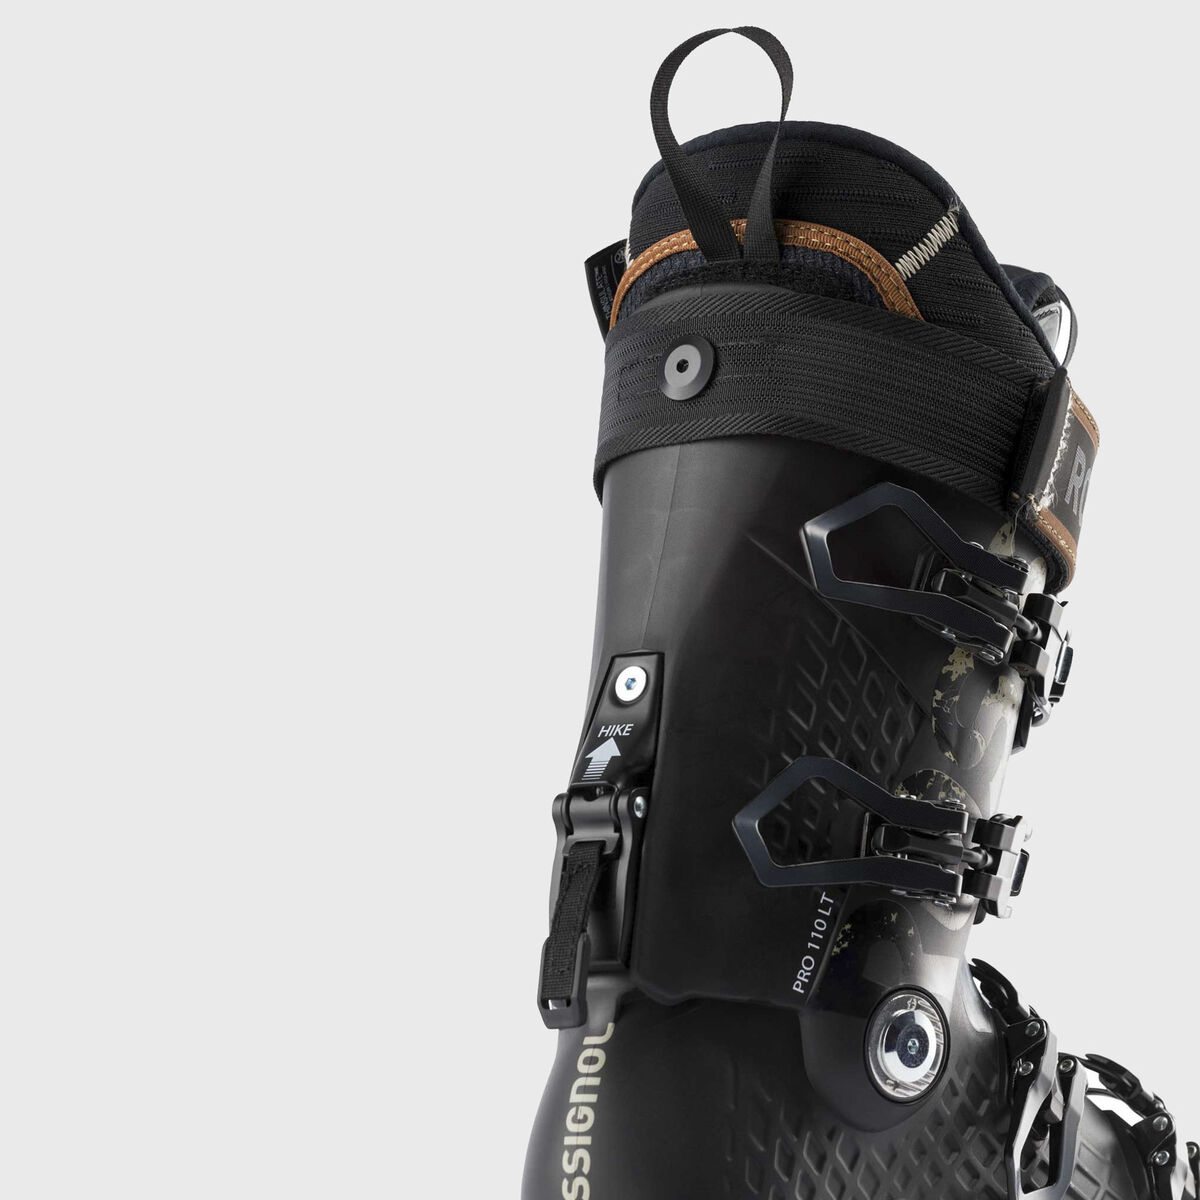 Men's Free Touring Ski Boots Alltrack Pro 110 LT